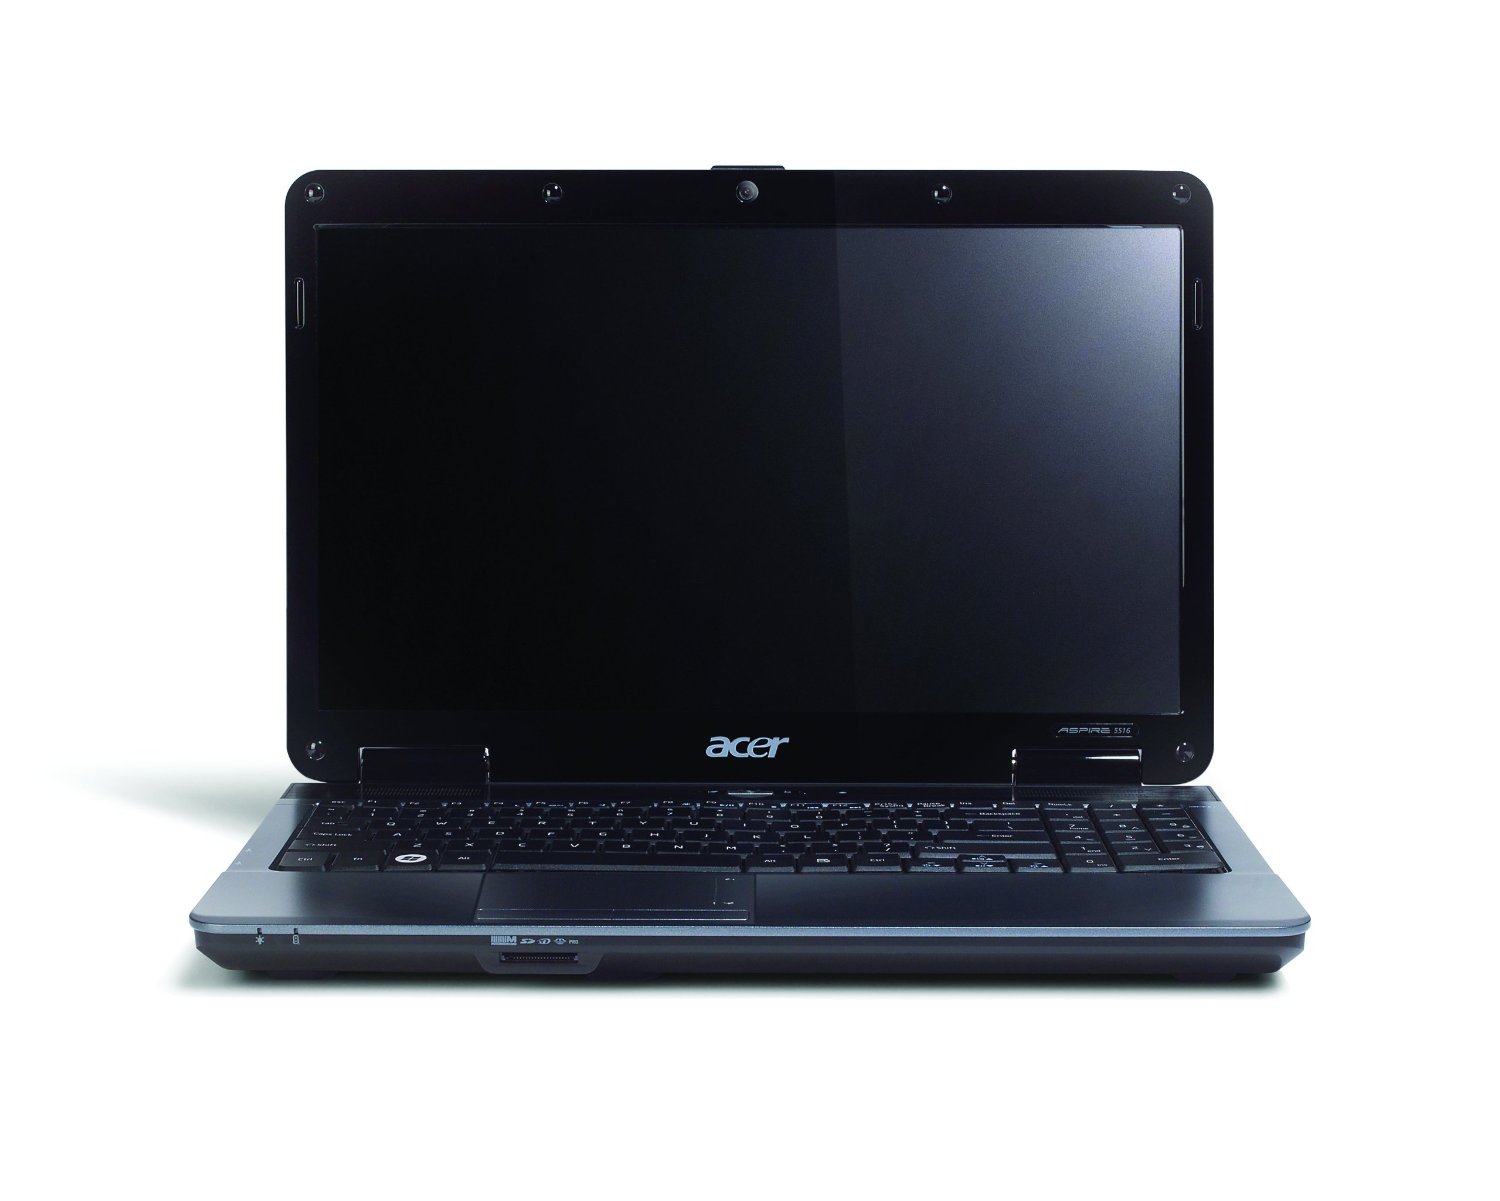 Acer Aspire 5732Z, 15.6-inch, 3GB RAM, 250GB, W7